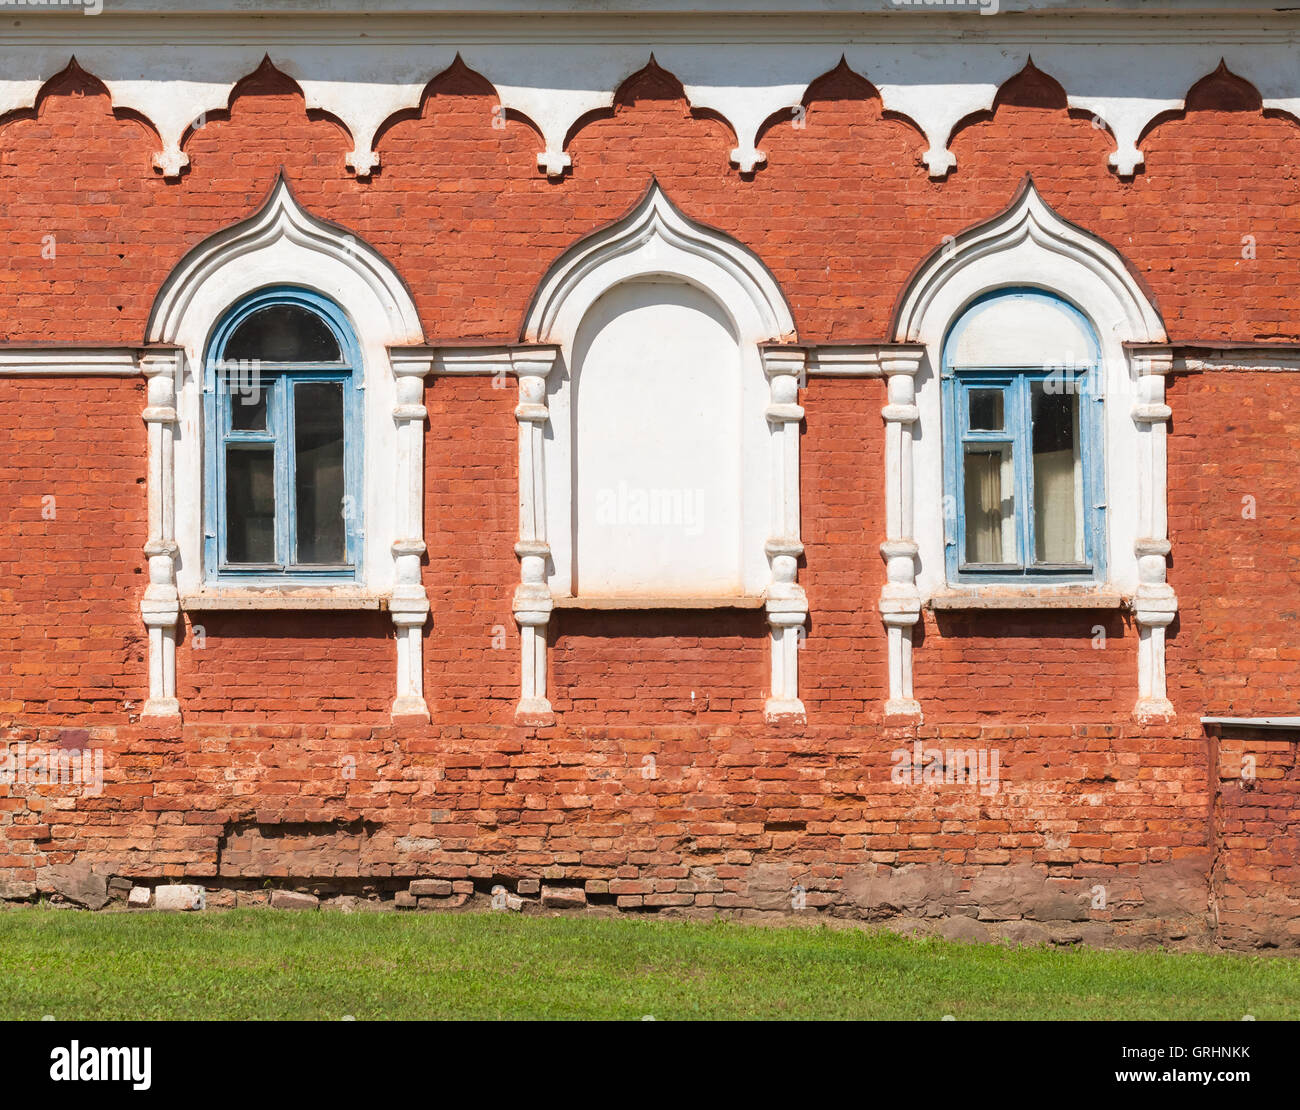 Rosso la parete in mattoni con finestre in bianco cornici decorative. Tradizionale antica architettura russa dettagli Foto Stock